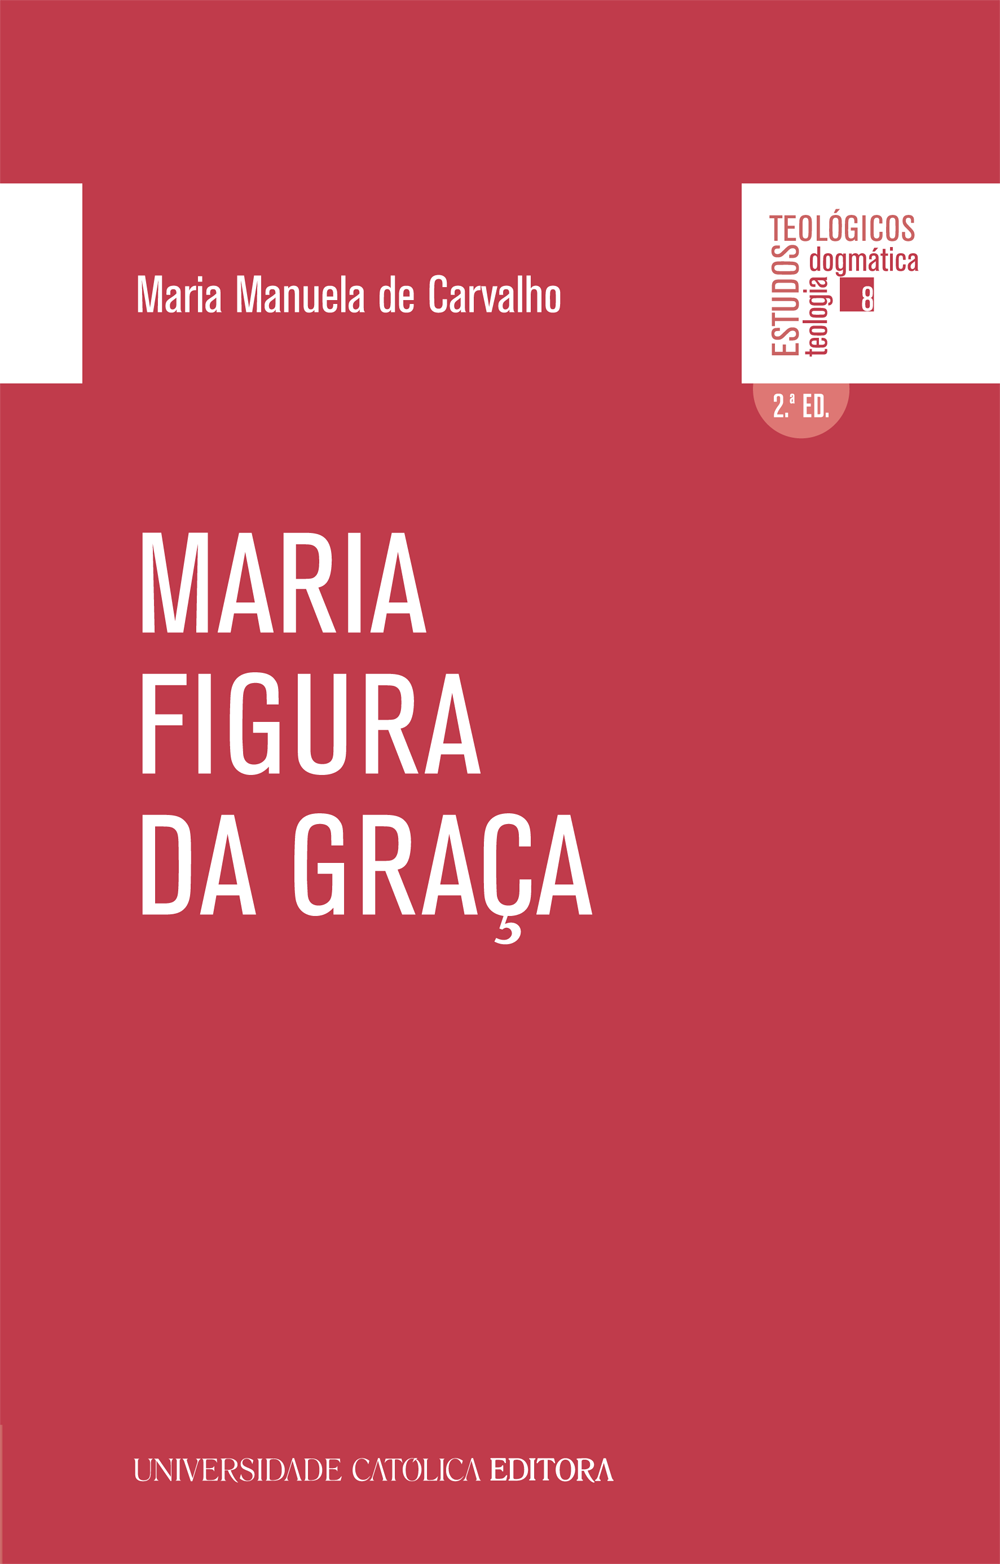 MARIA FIGURA DA GRAÇA - Universidade Católica Editora